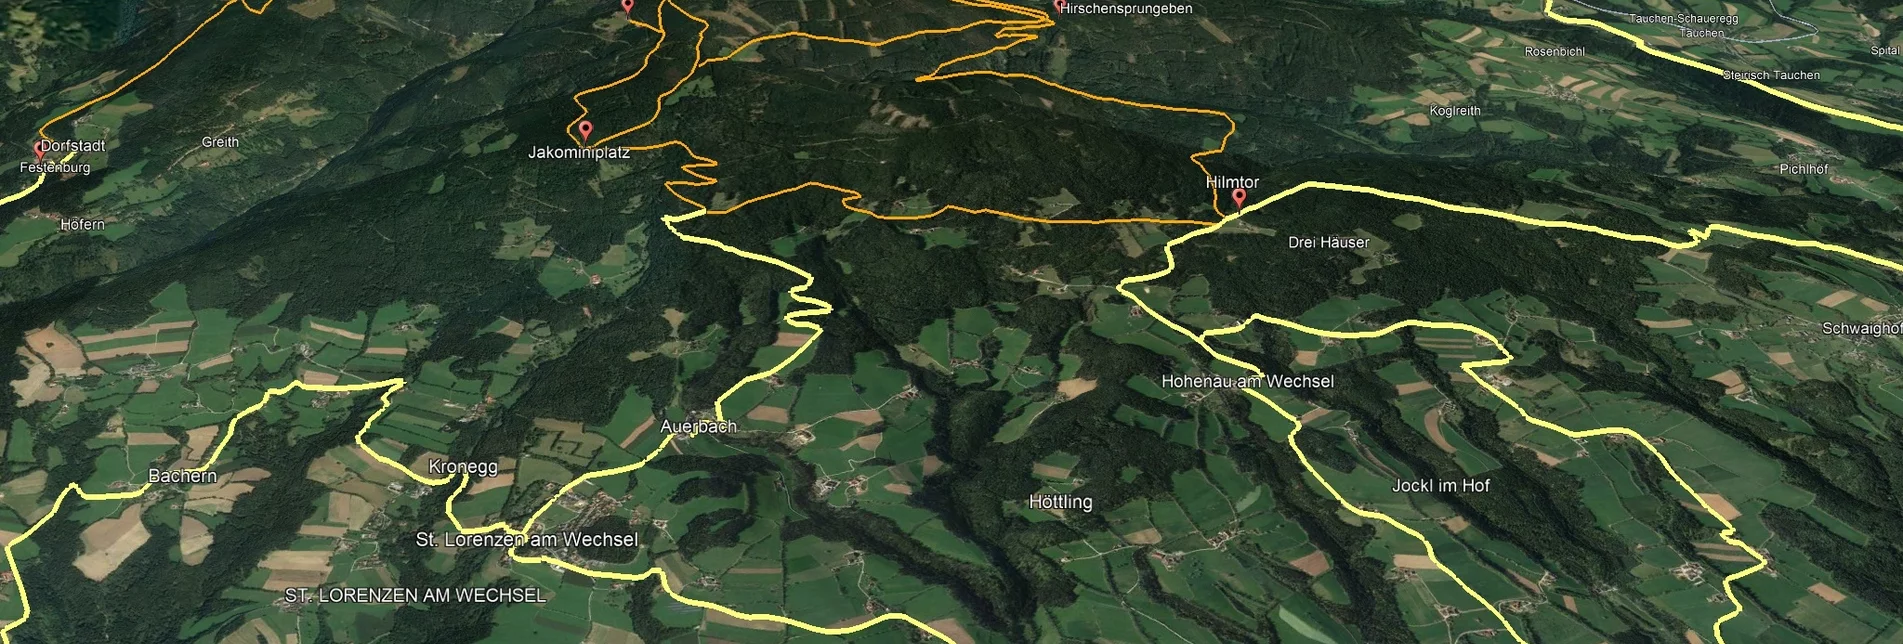 Mountainbike Steirische Wexl Trails - Studentenkreuz Route - Touren-Impression #1 | © Verein Tourismusentwicklung Steirischer Wechsel